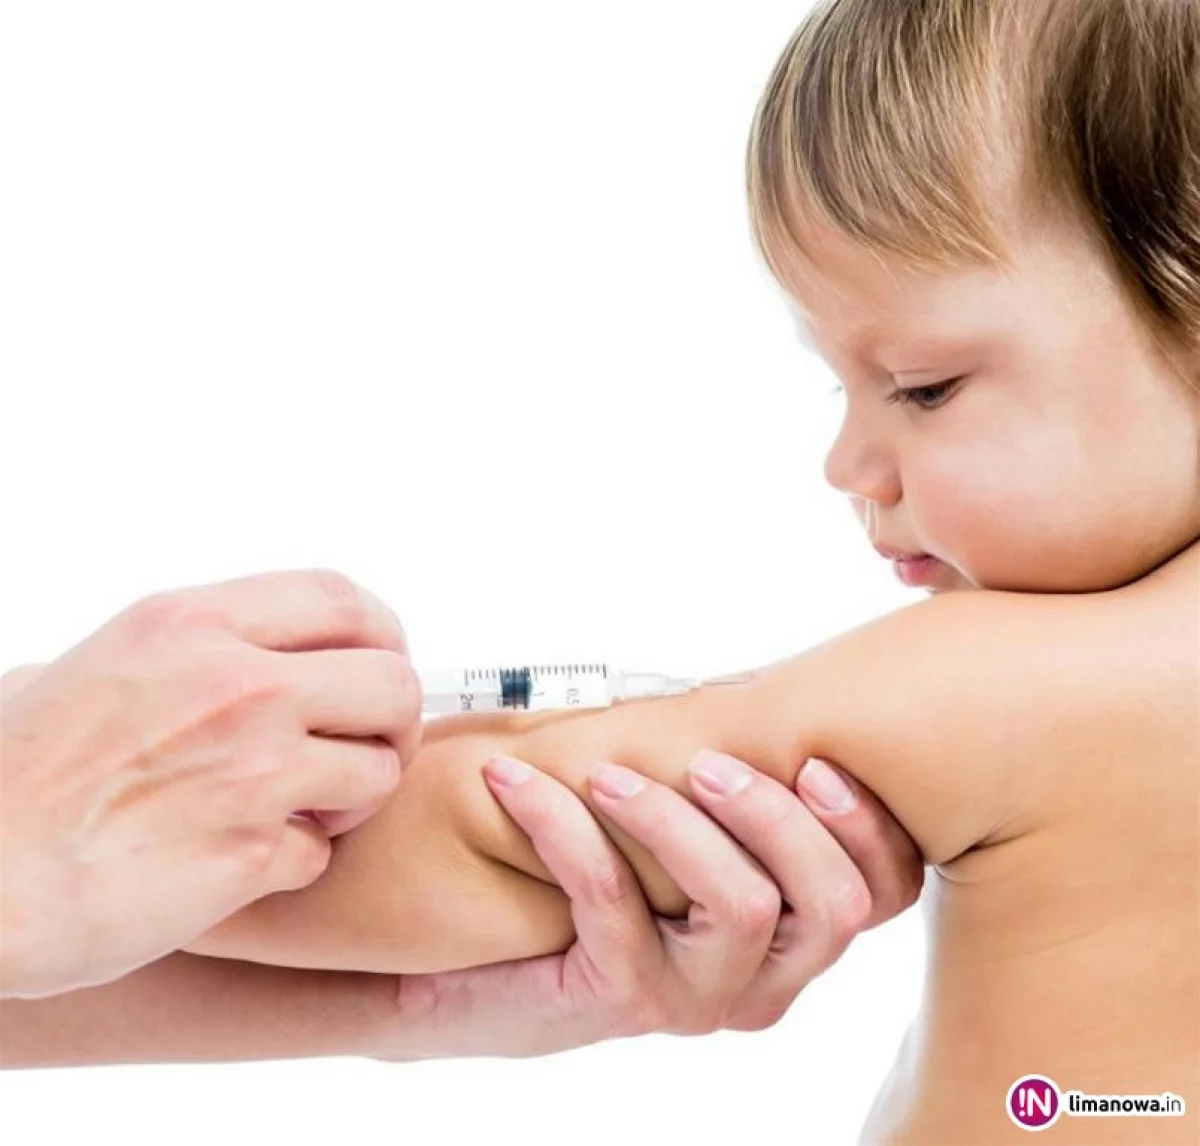 73 proc. Polaków sądzi, że szczepionki są bezpieczne dla dzieci